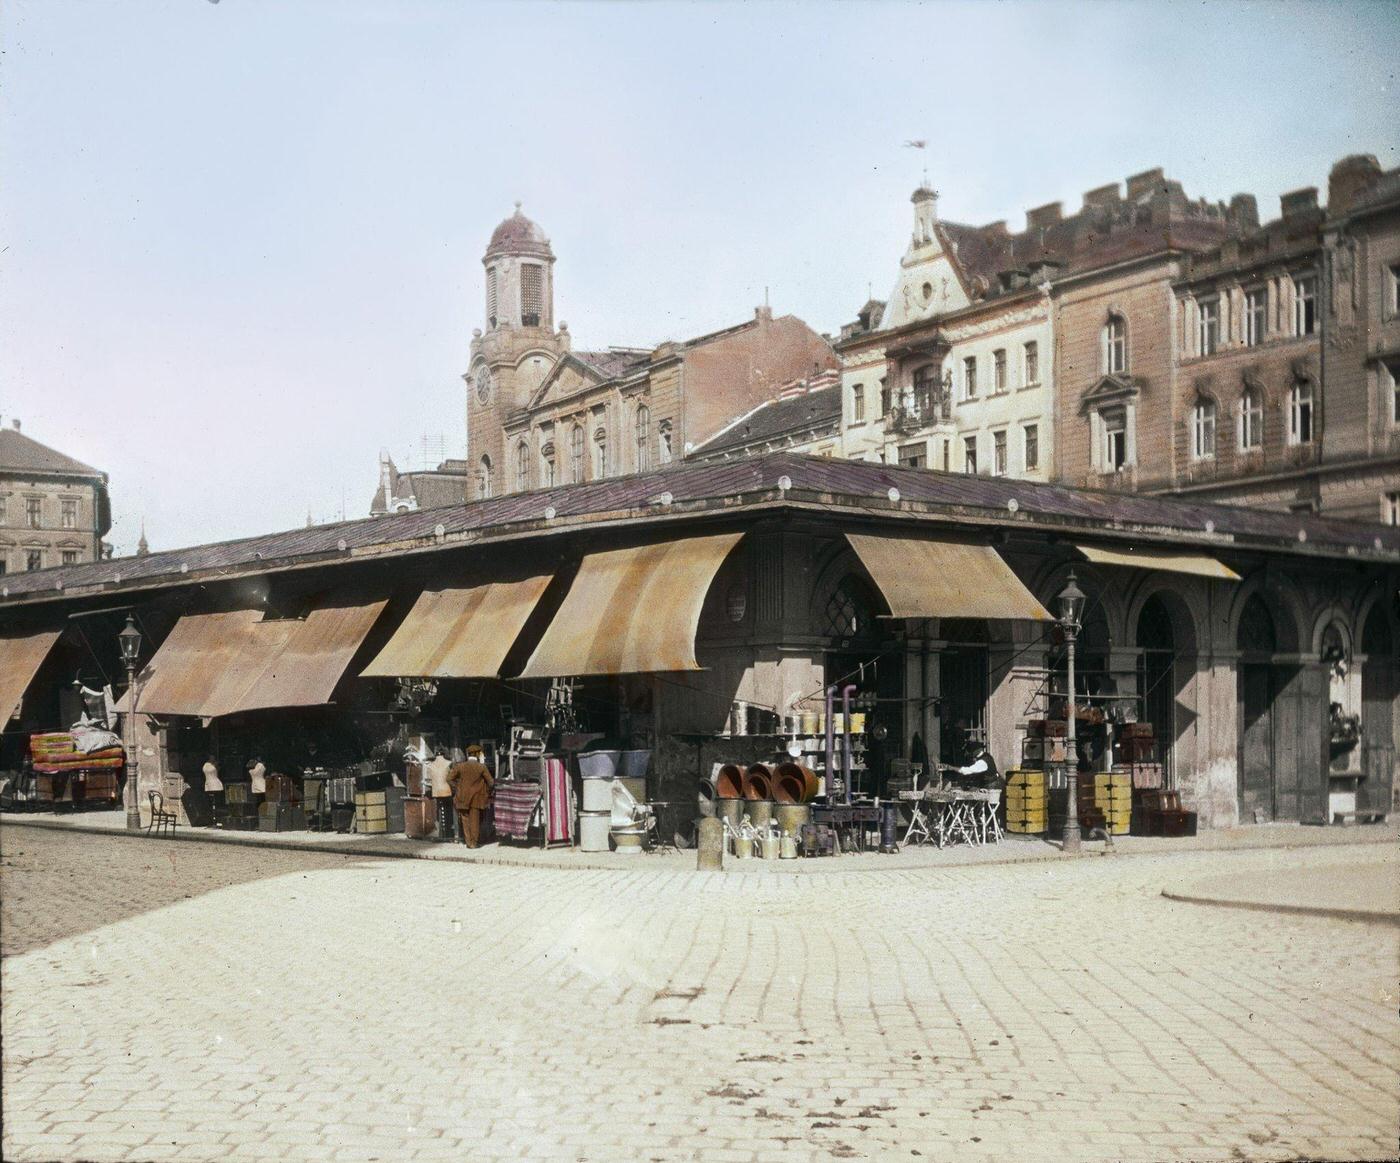 The Tandelmarkt-market in Vienna, Leopoldstadt, 1900.